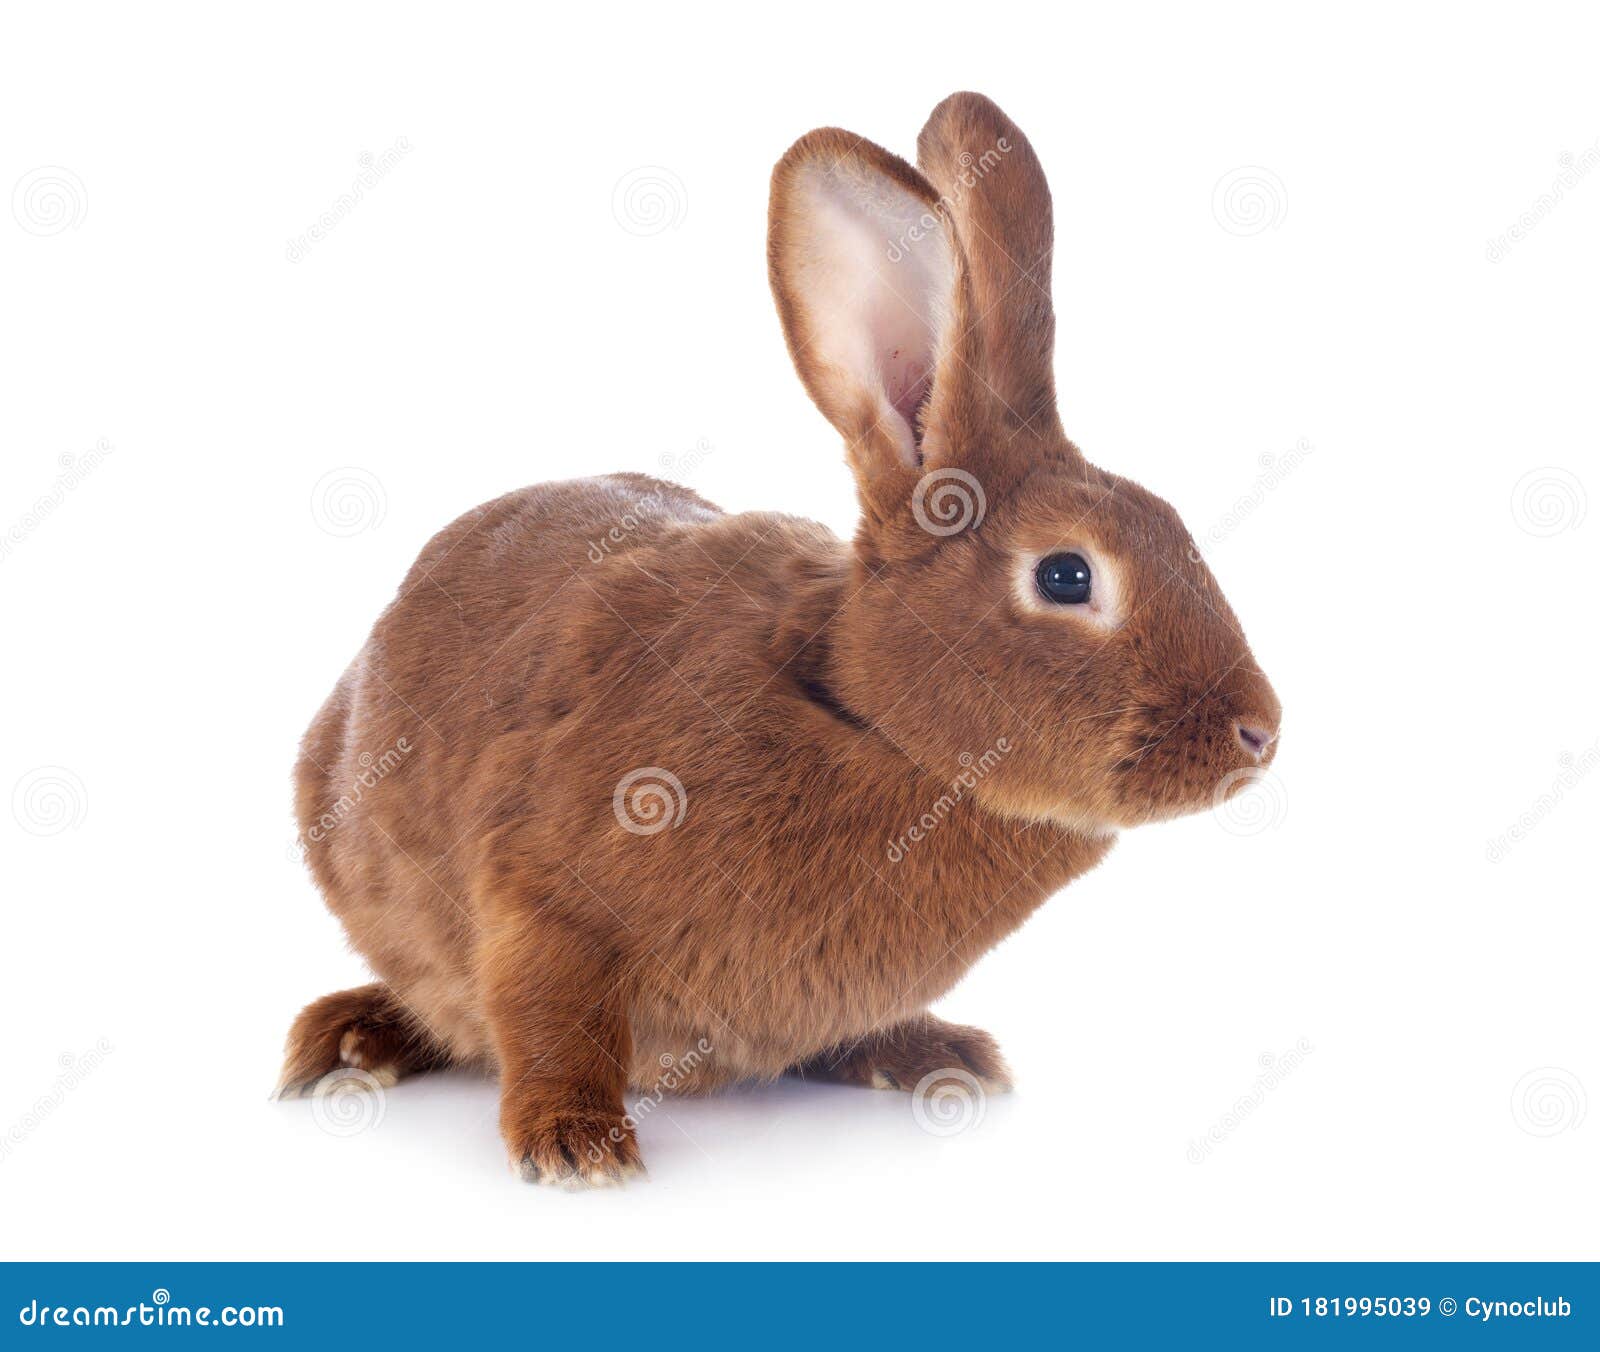 fauve de bourgogne rabbit